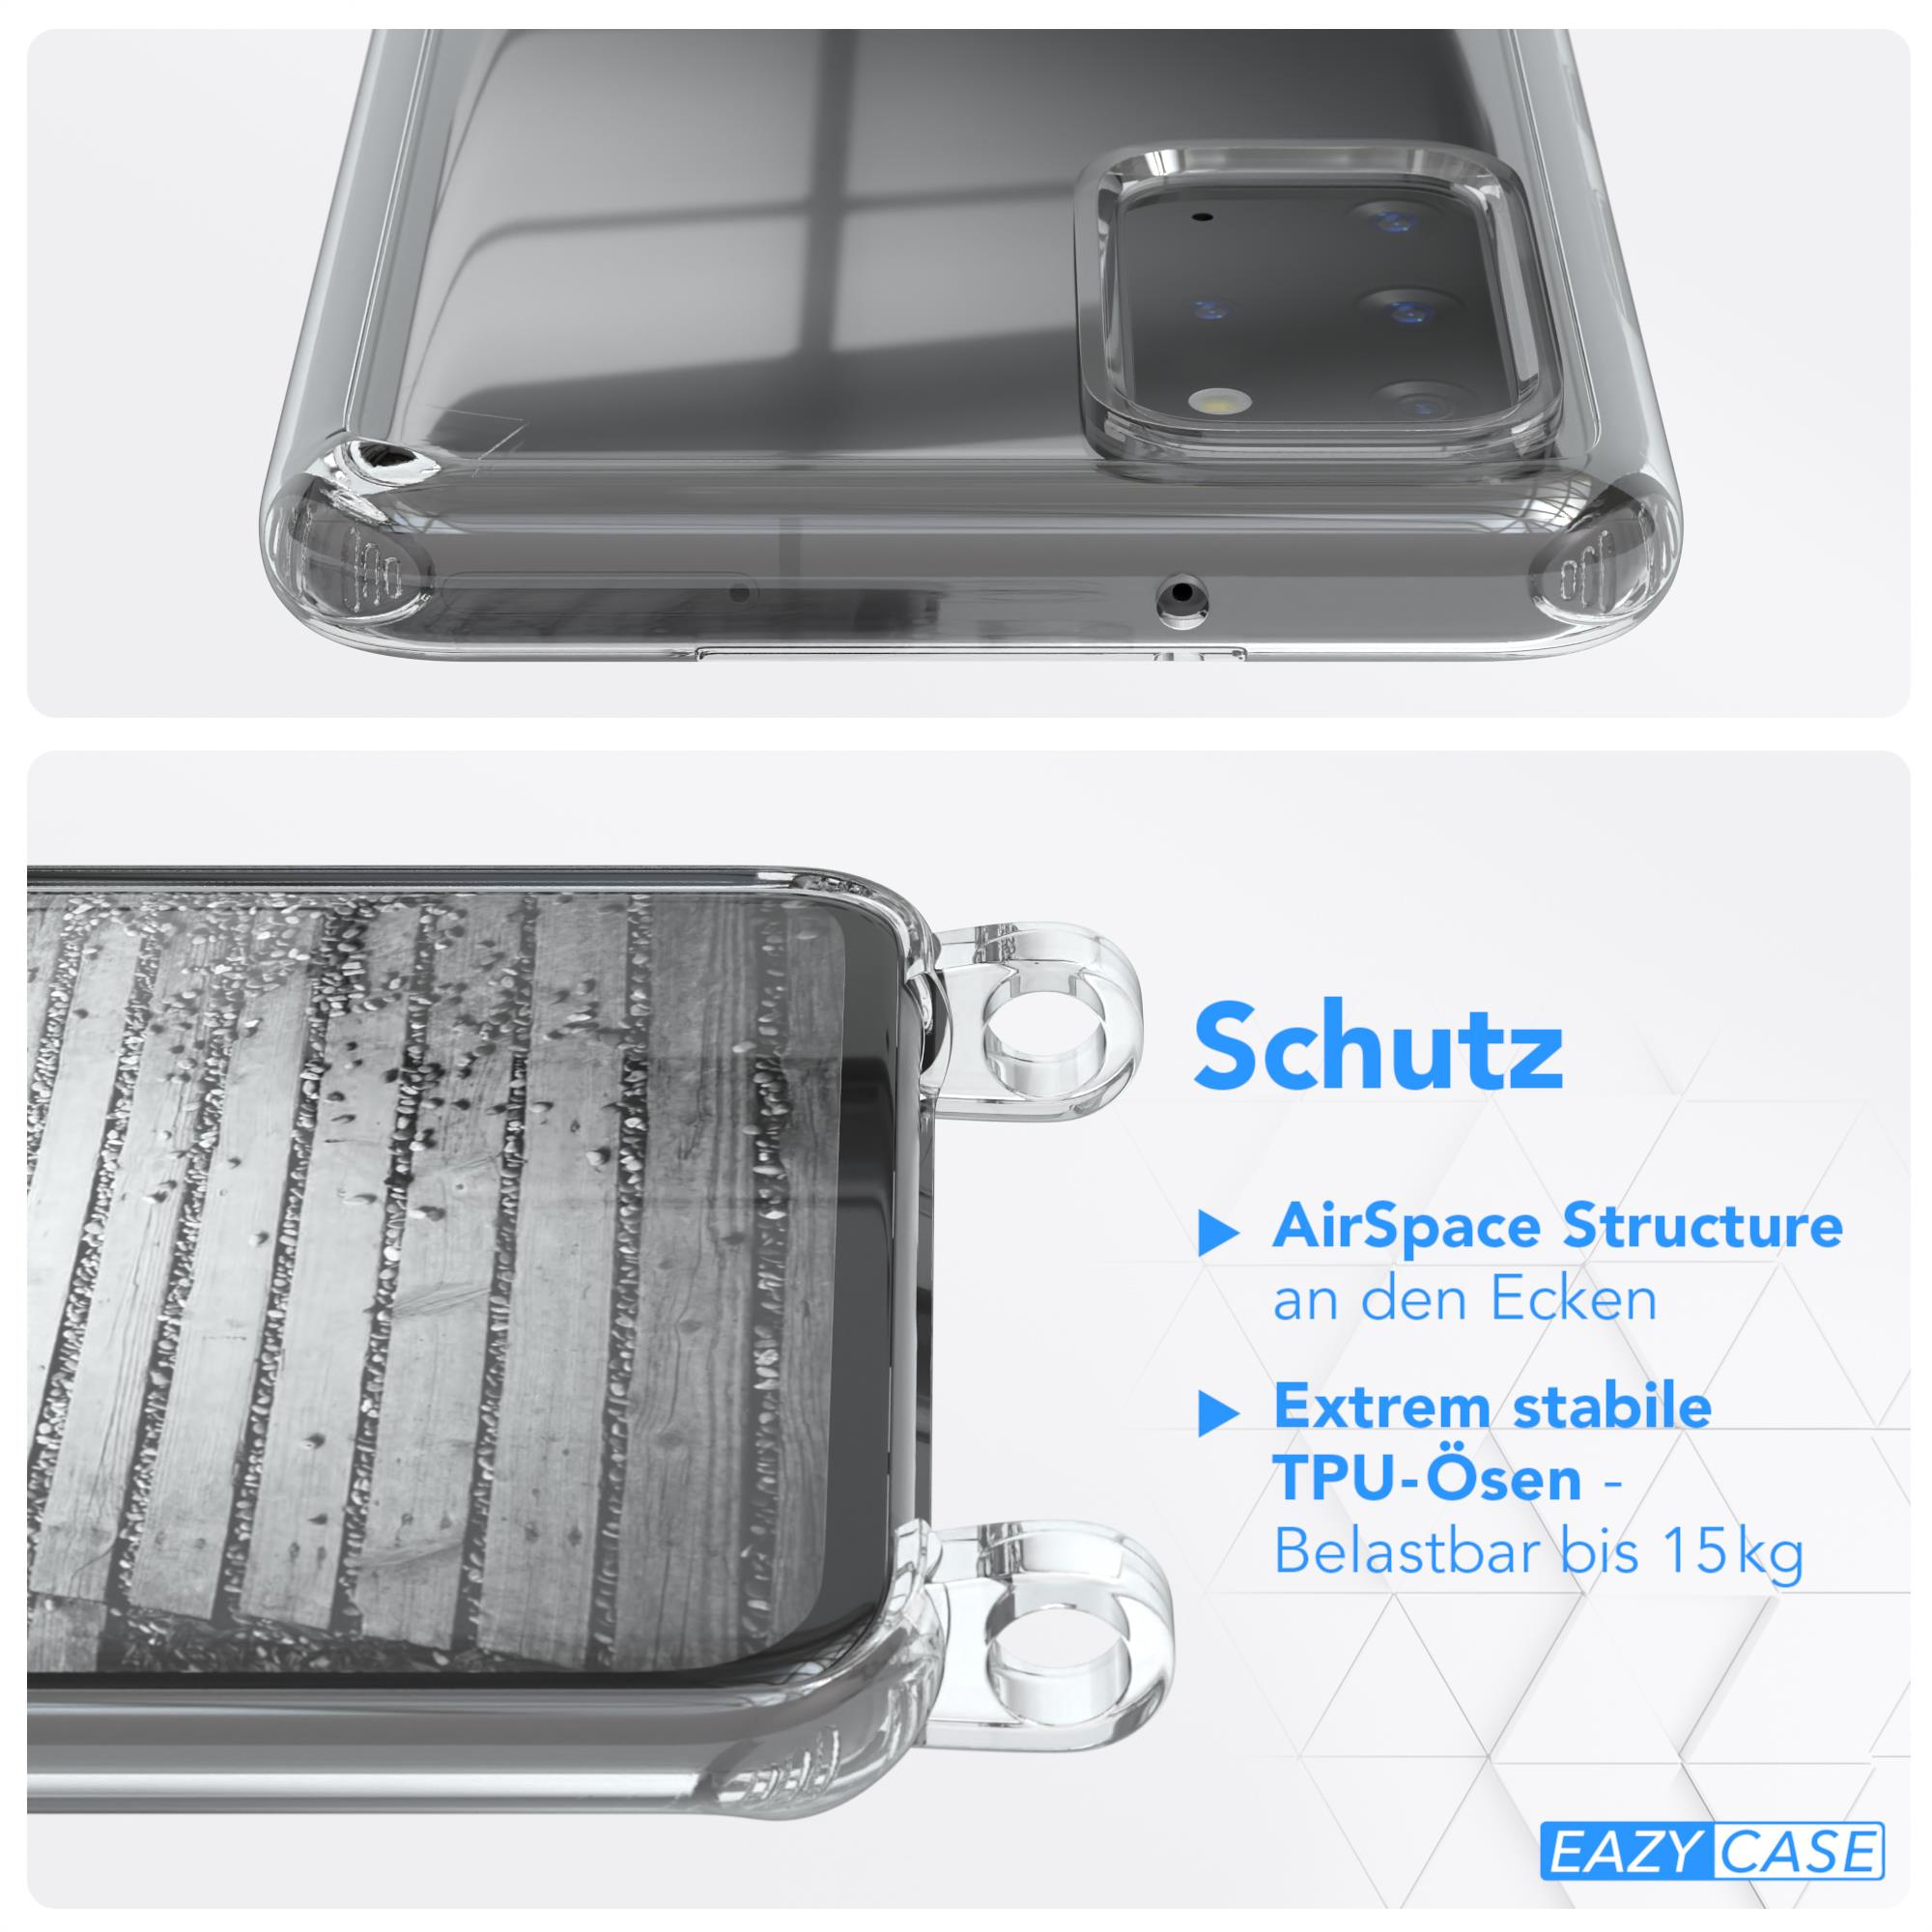 Handykette Rose Kordel Metall CASE Samsung, Galaxy S20 EAZY Plus 5G, extra + Umhängetasche, S20 Plus Schwarz, /